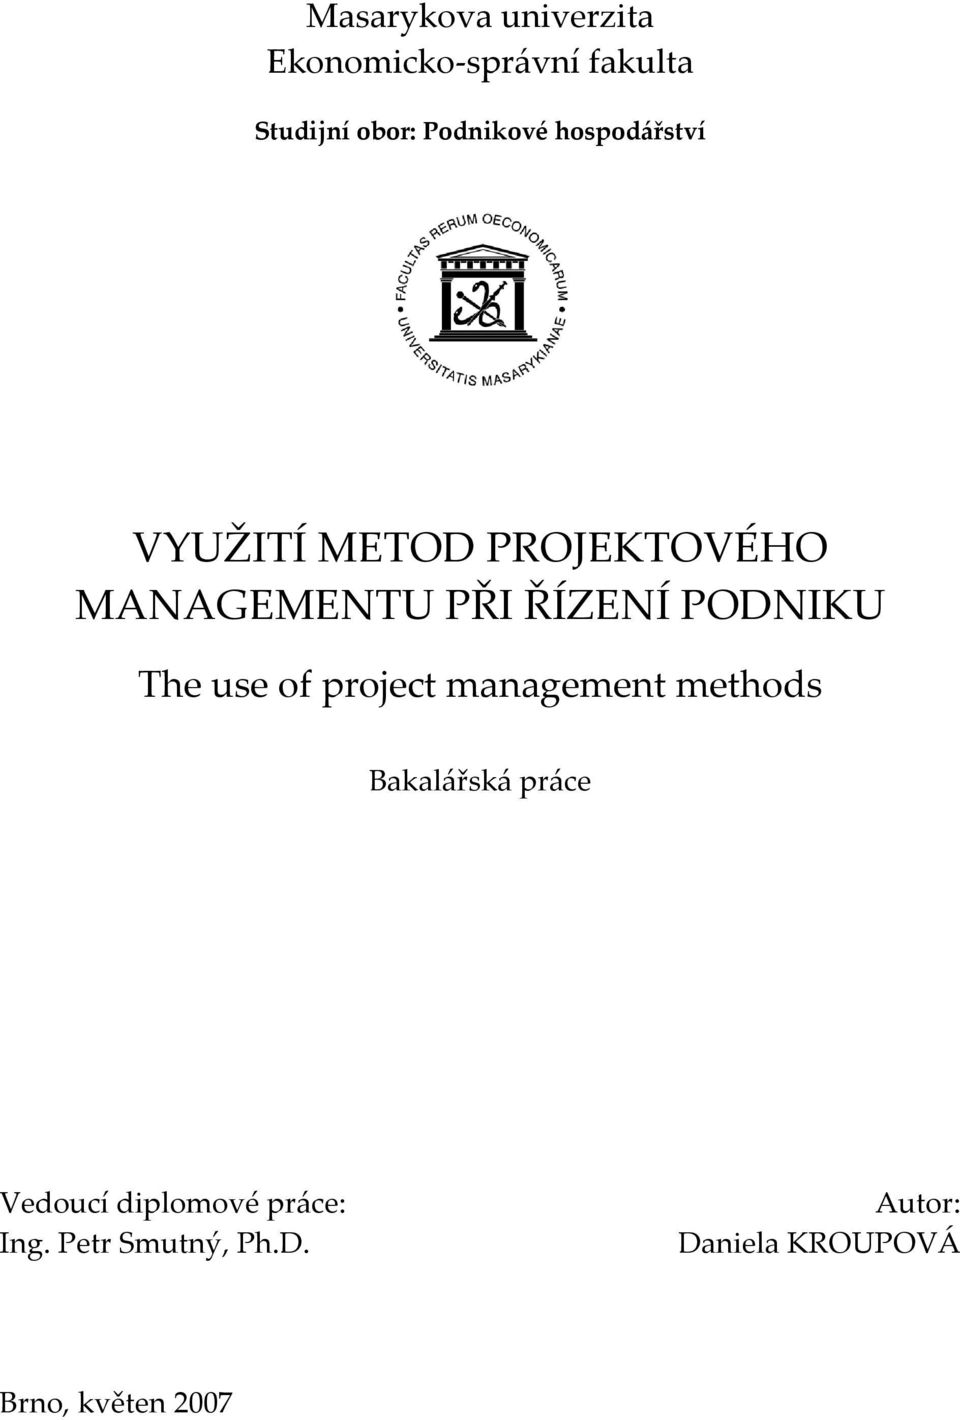 PODNIKU The use of project management methods Bakalářská práce Vedoucí